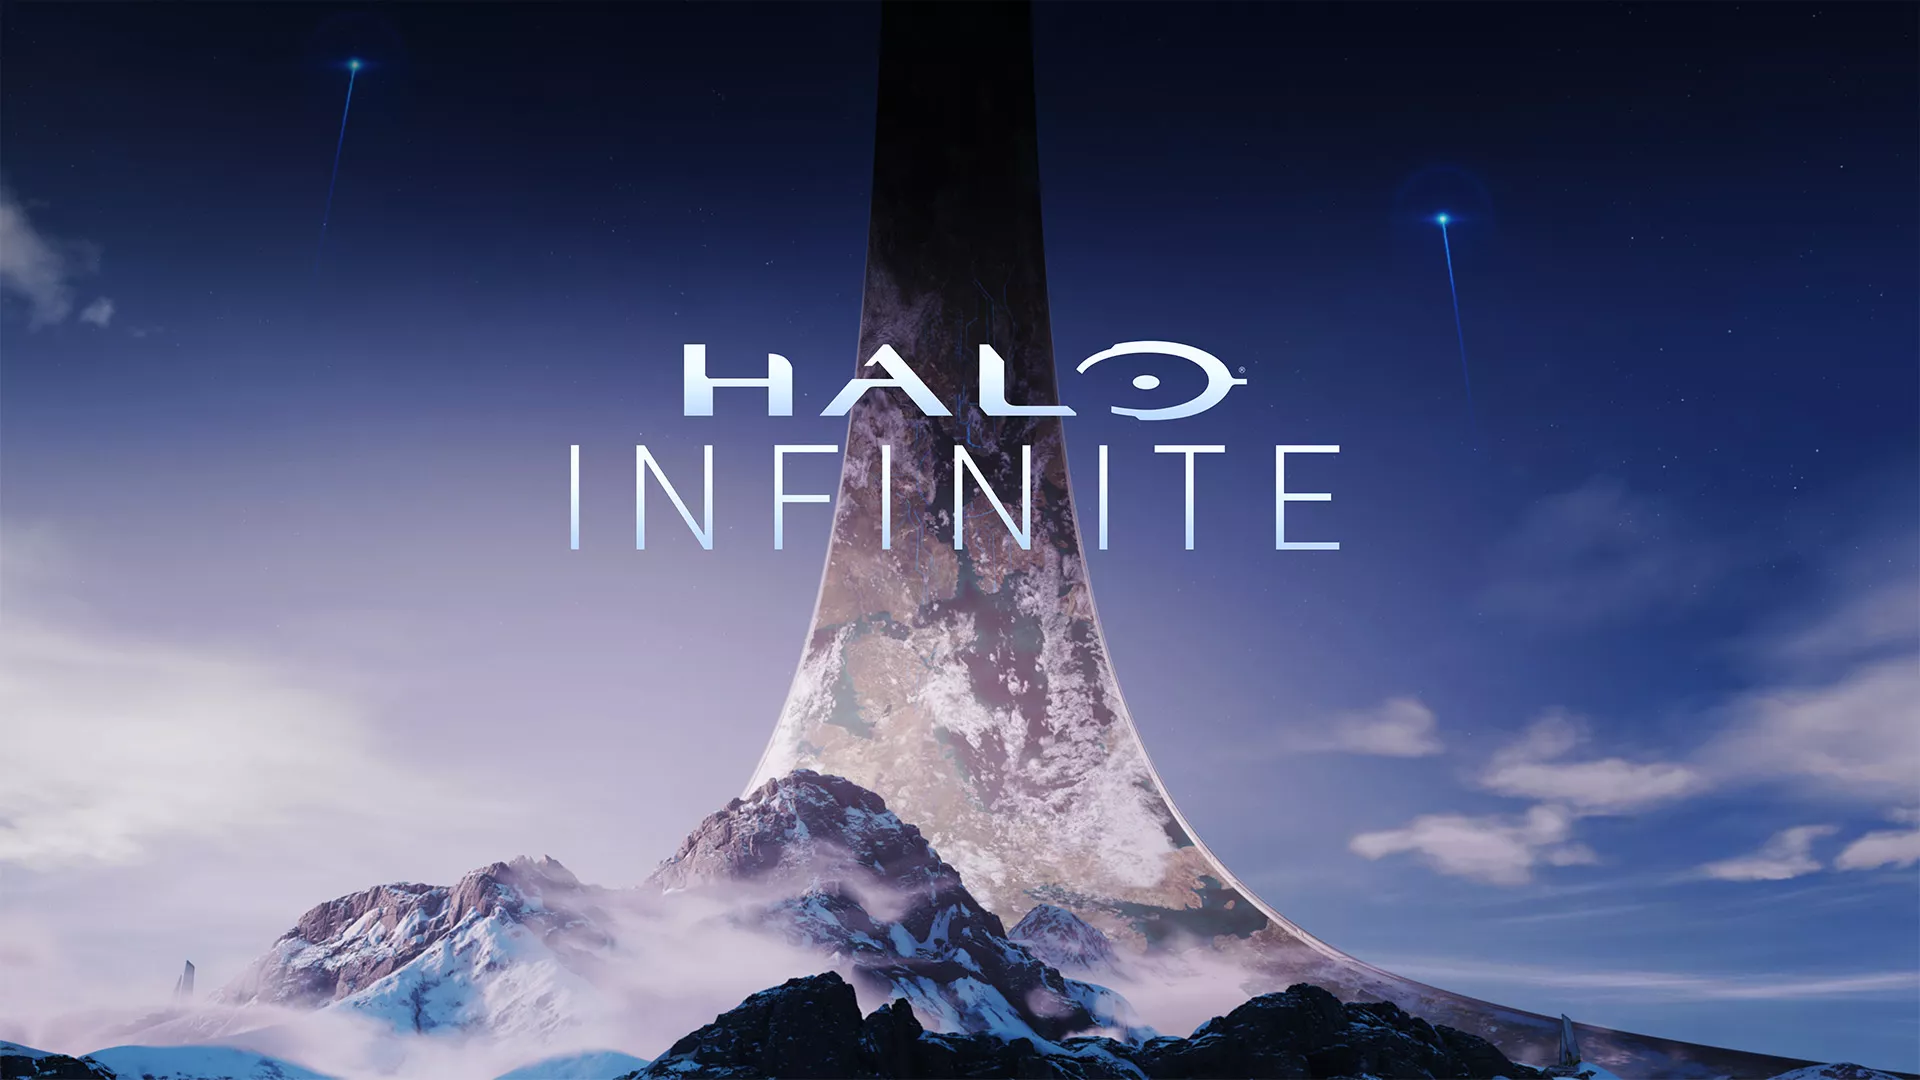 Microsoft wird für seine Entlassungen beim Halo-Entwickler 343 Studios kritisiert Heropic